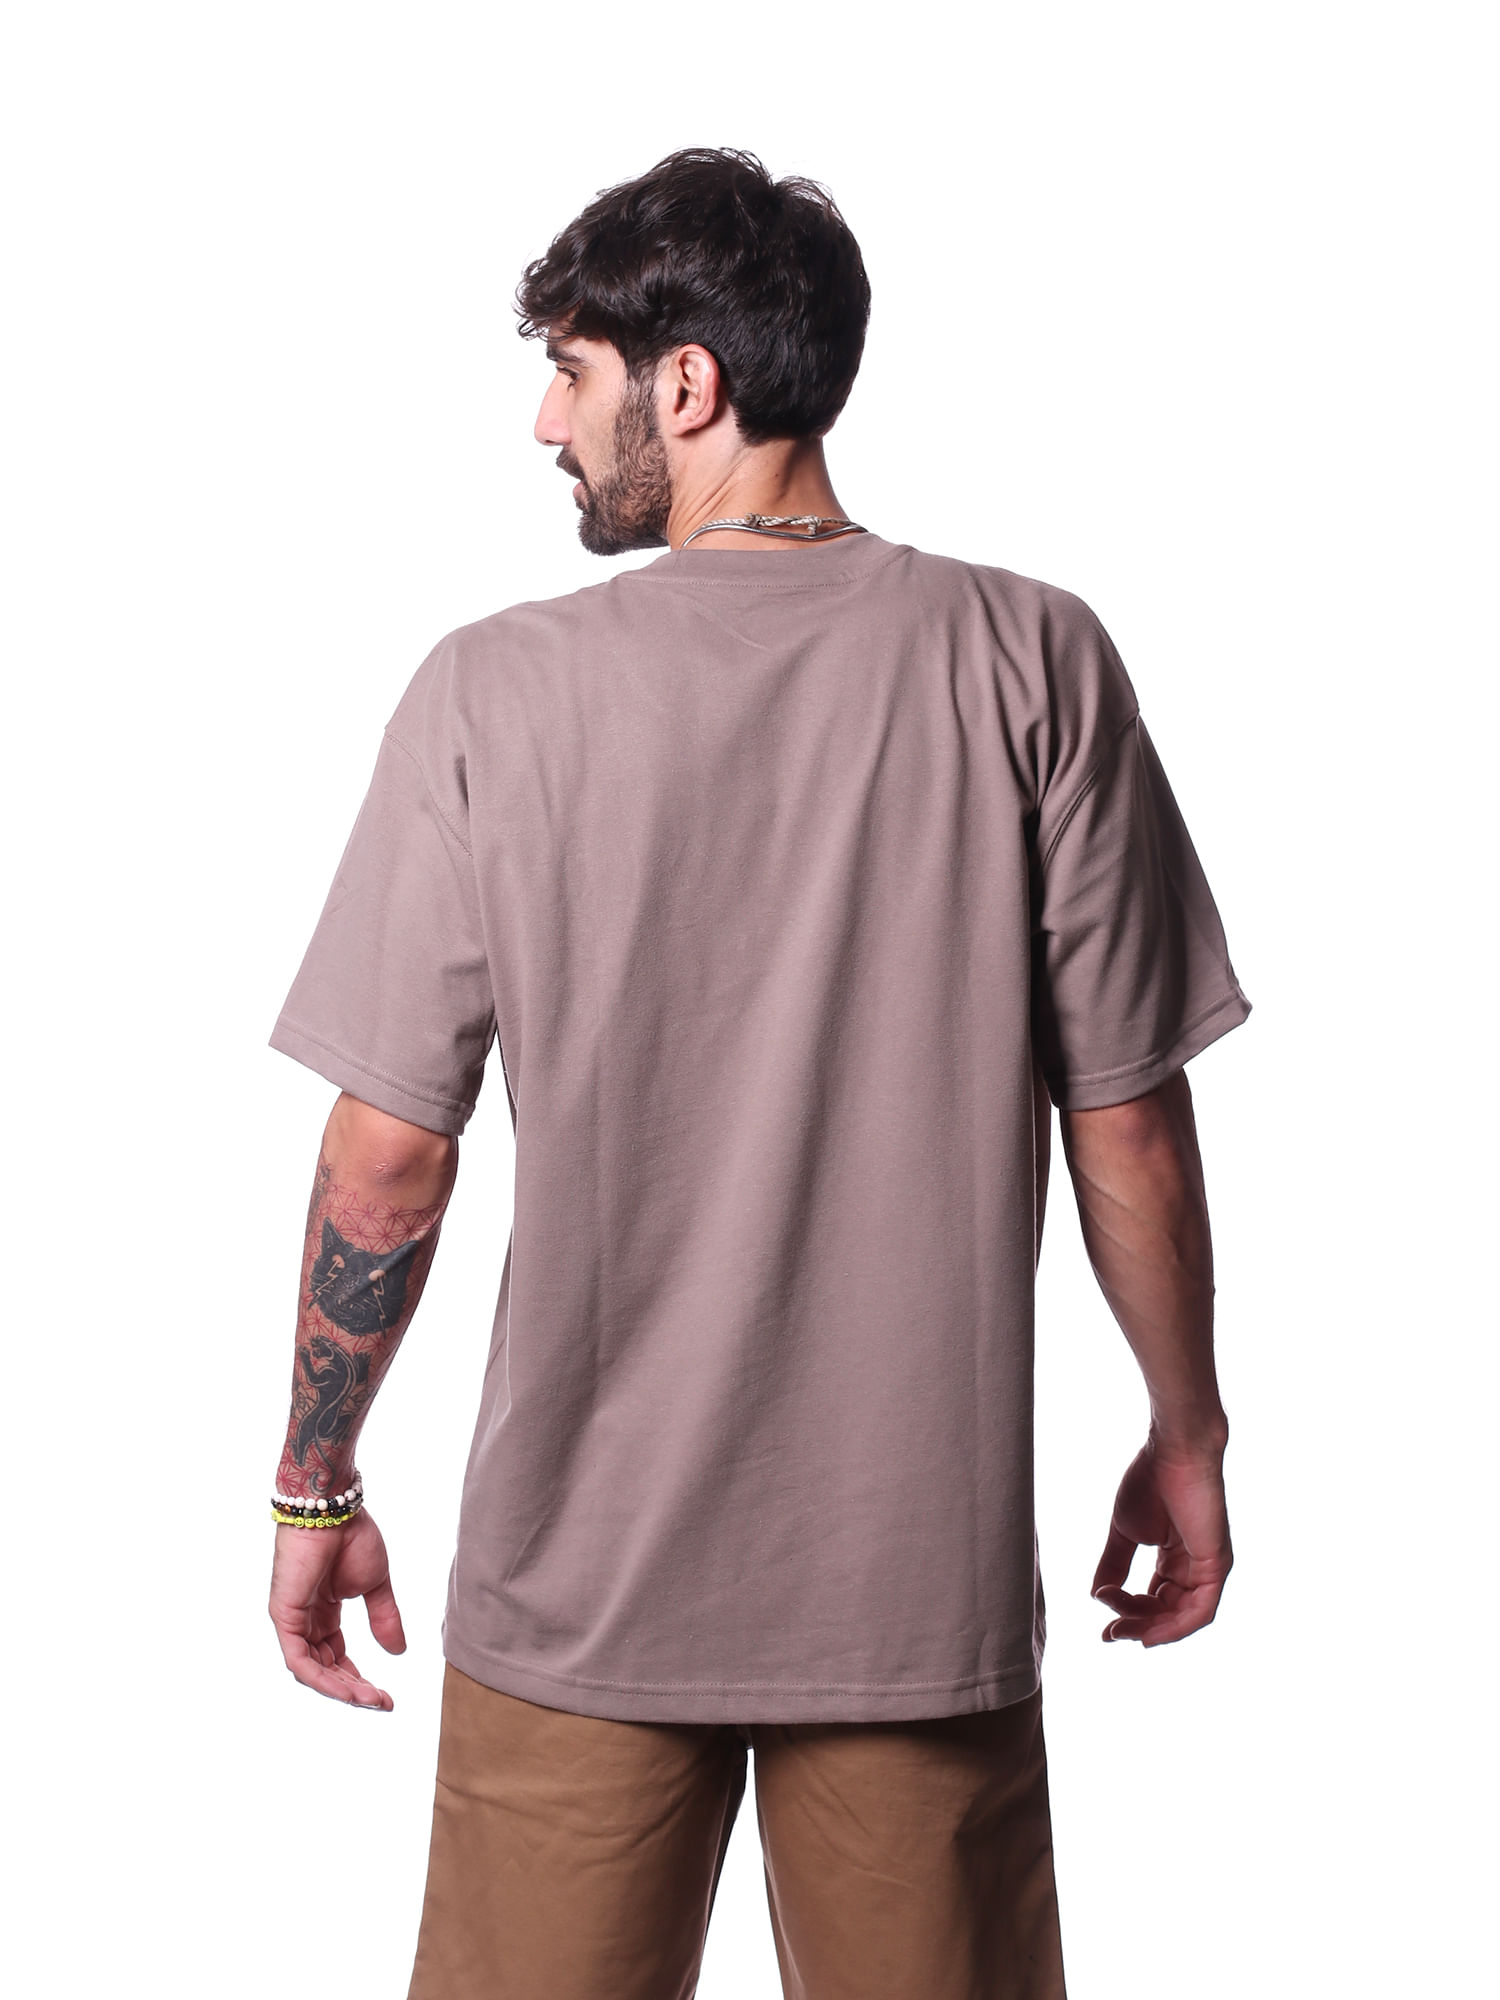 Camiseta-new-balance-small-logo-Marrom